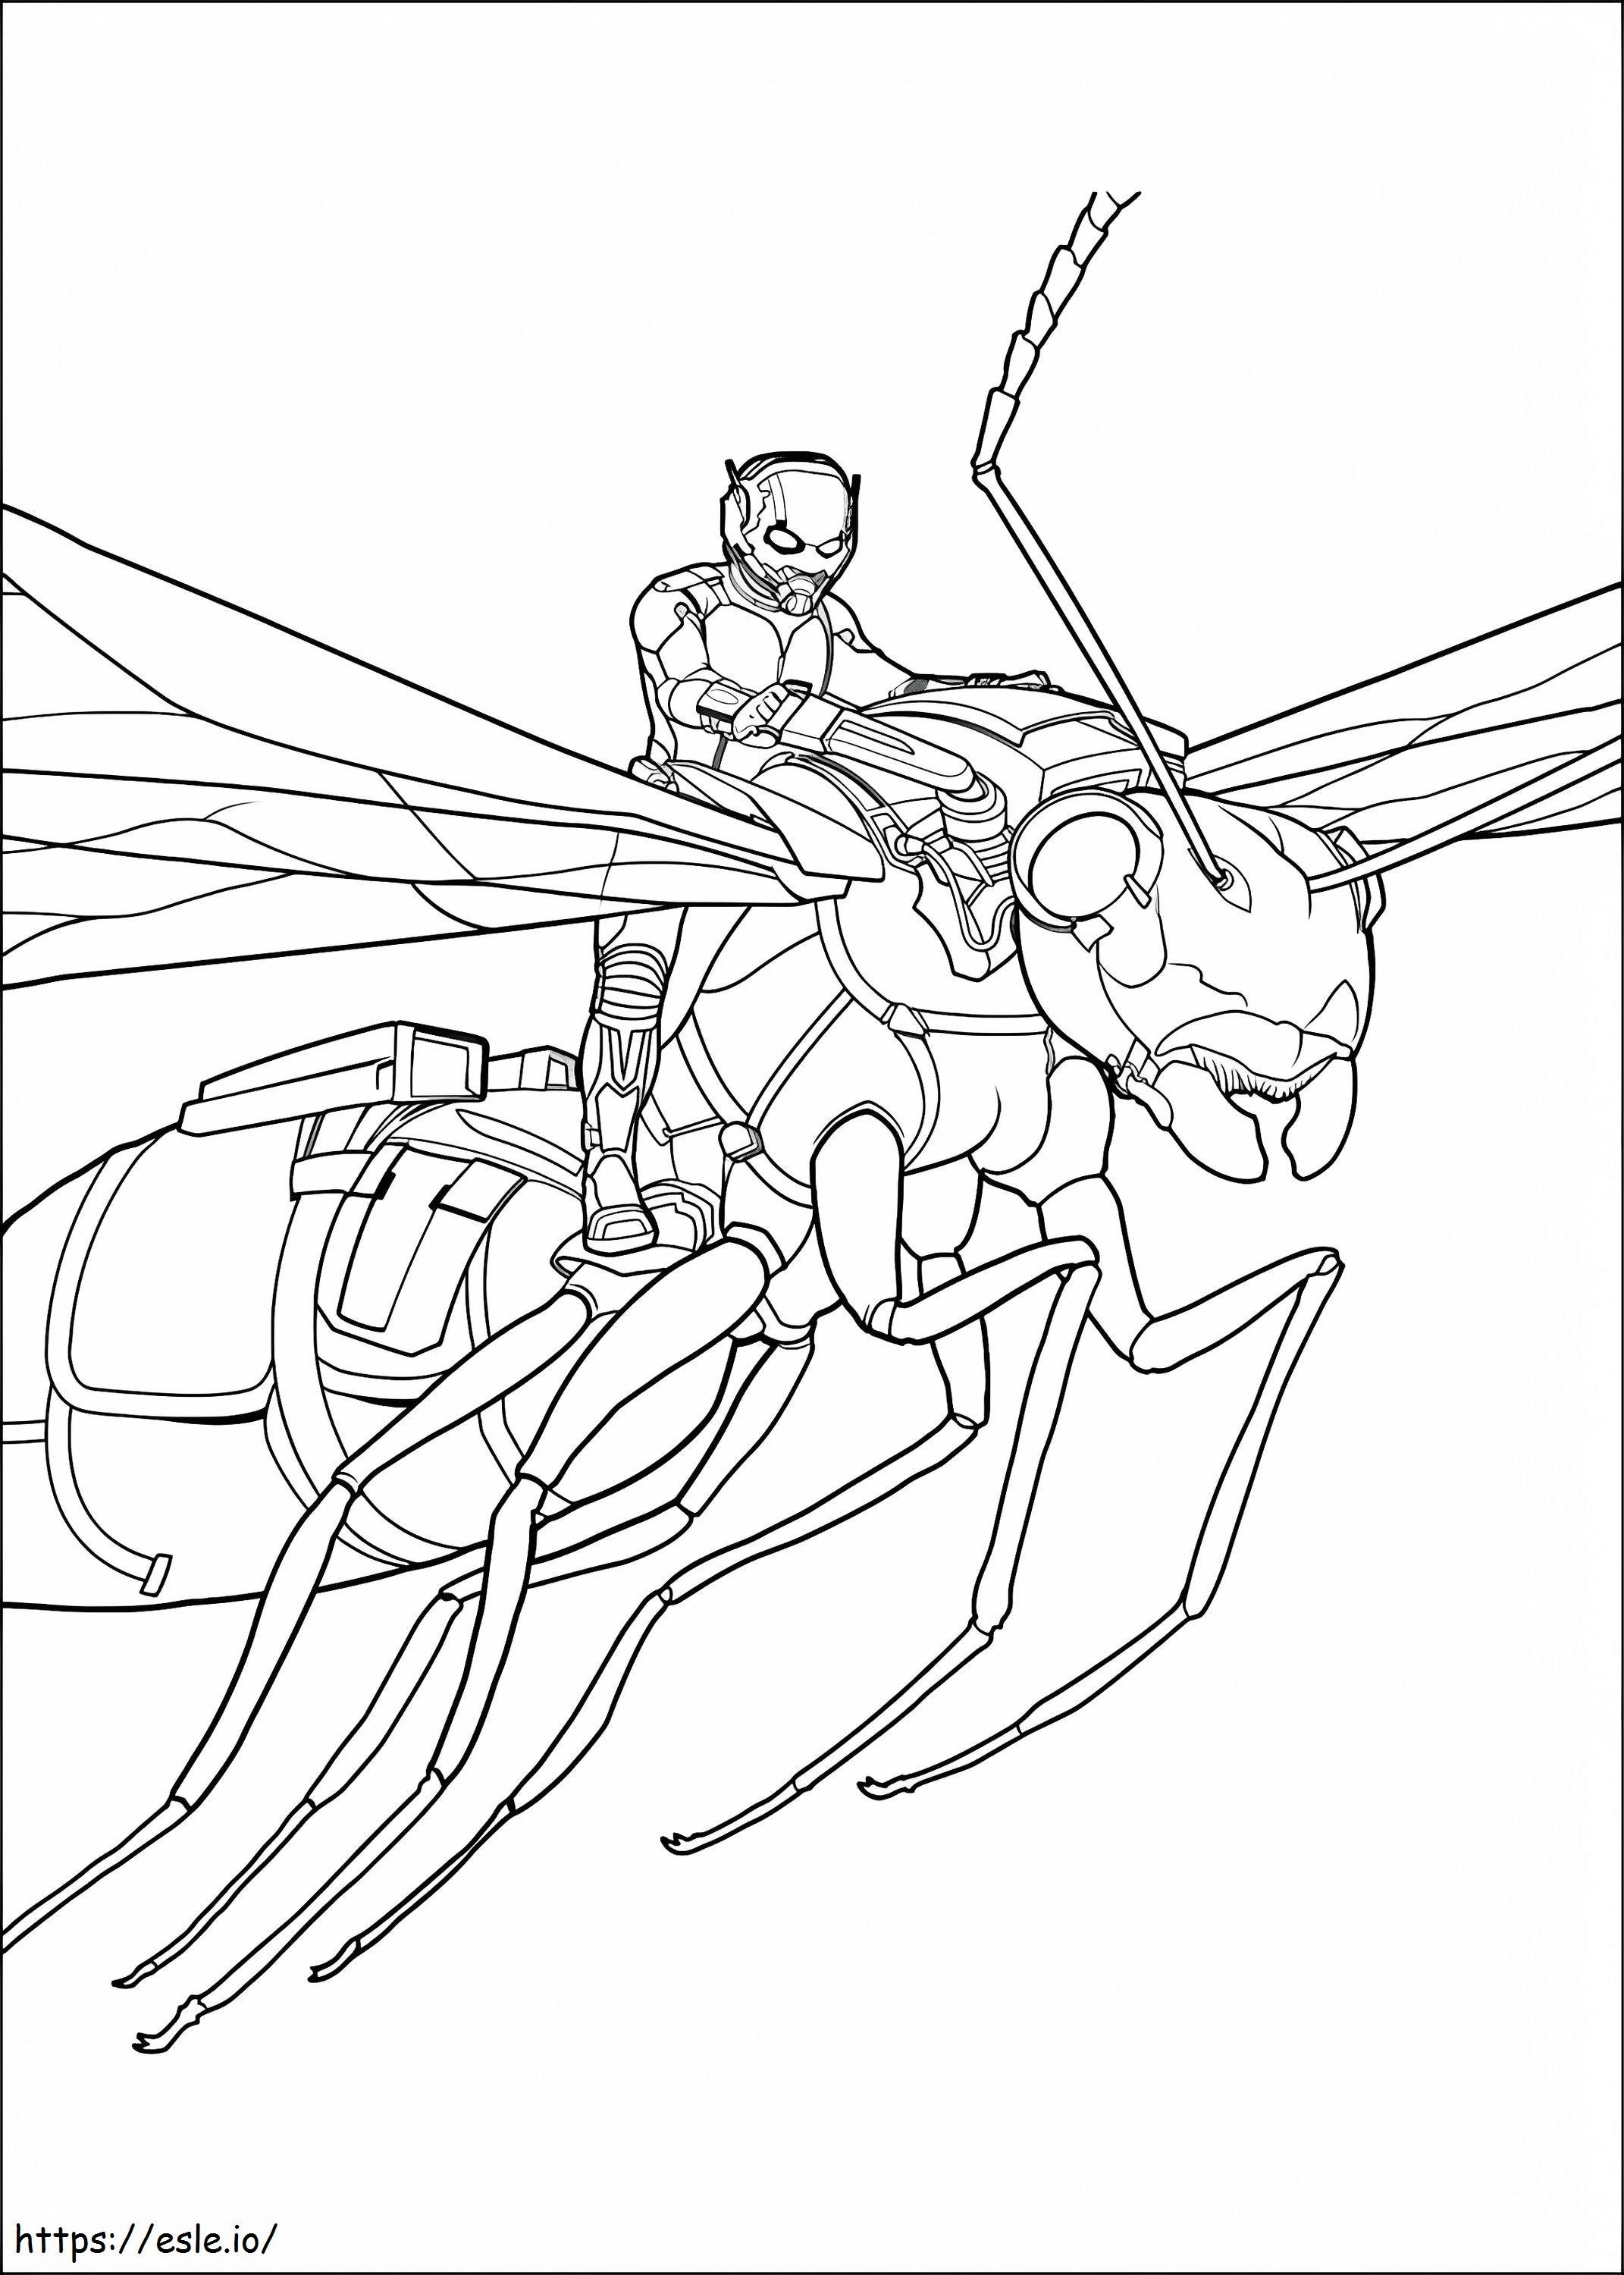  Ameisenmann auf fliegender Ameise A4 ausmalbilder